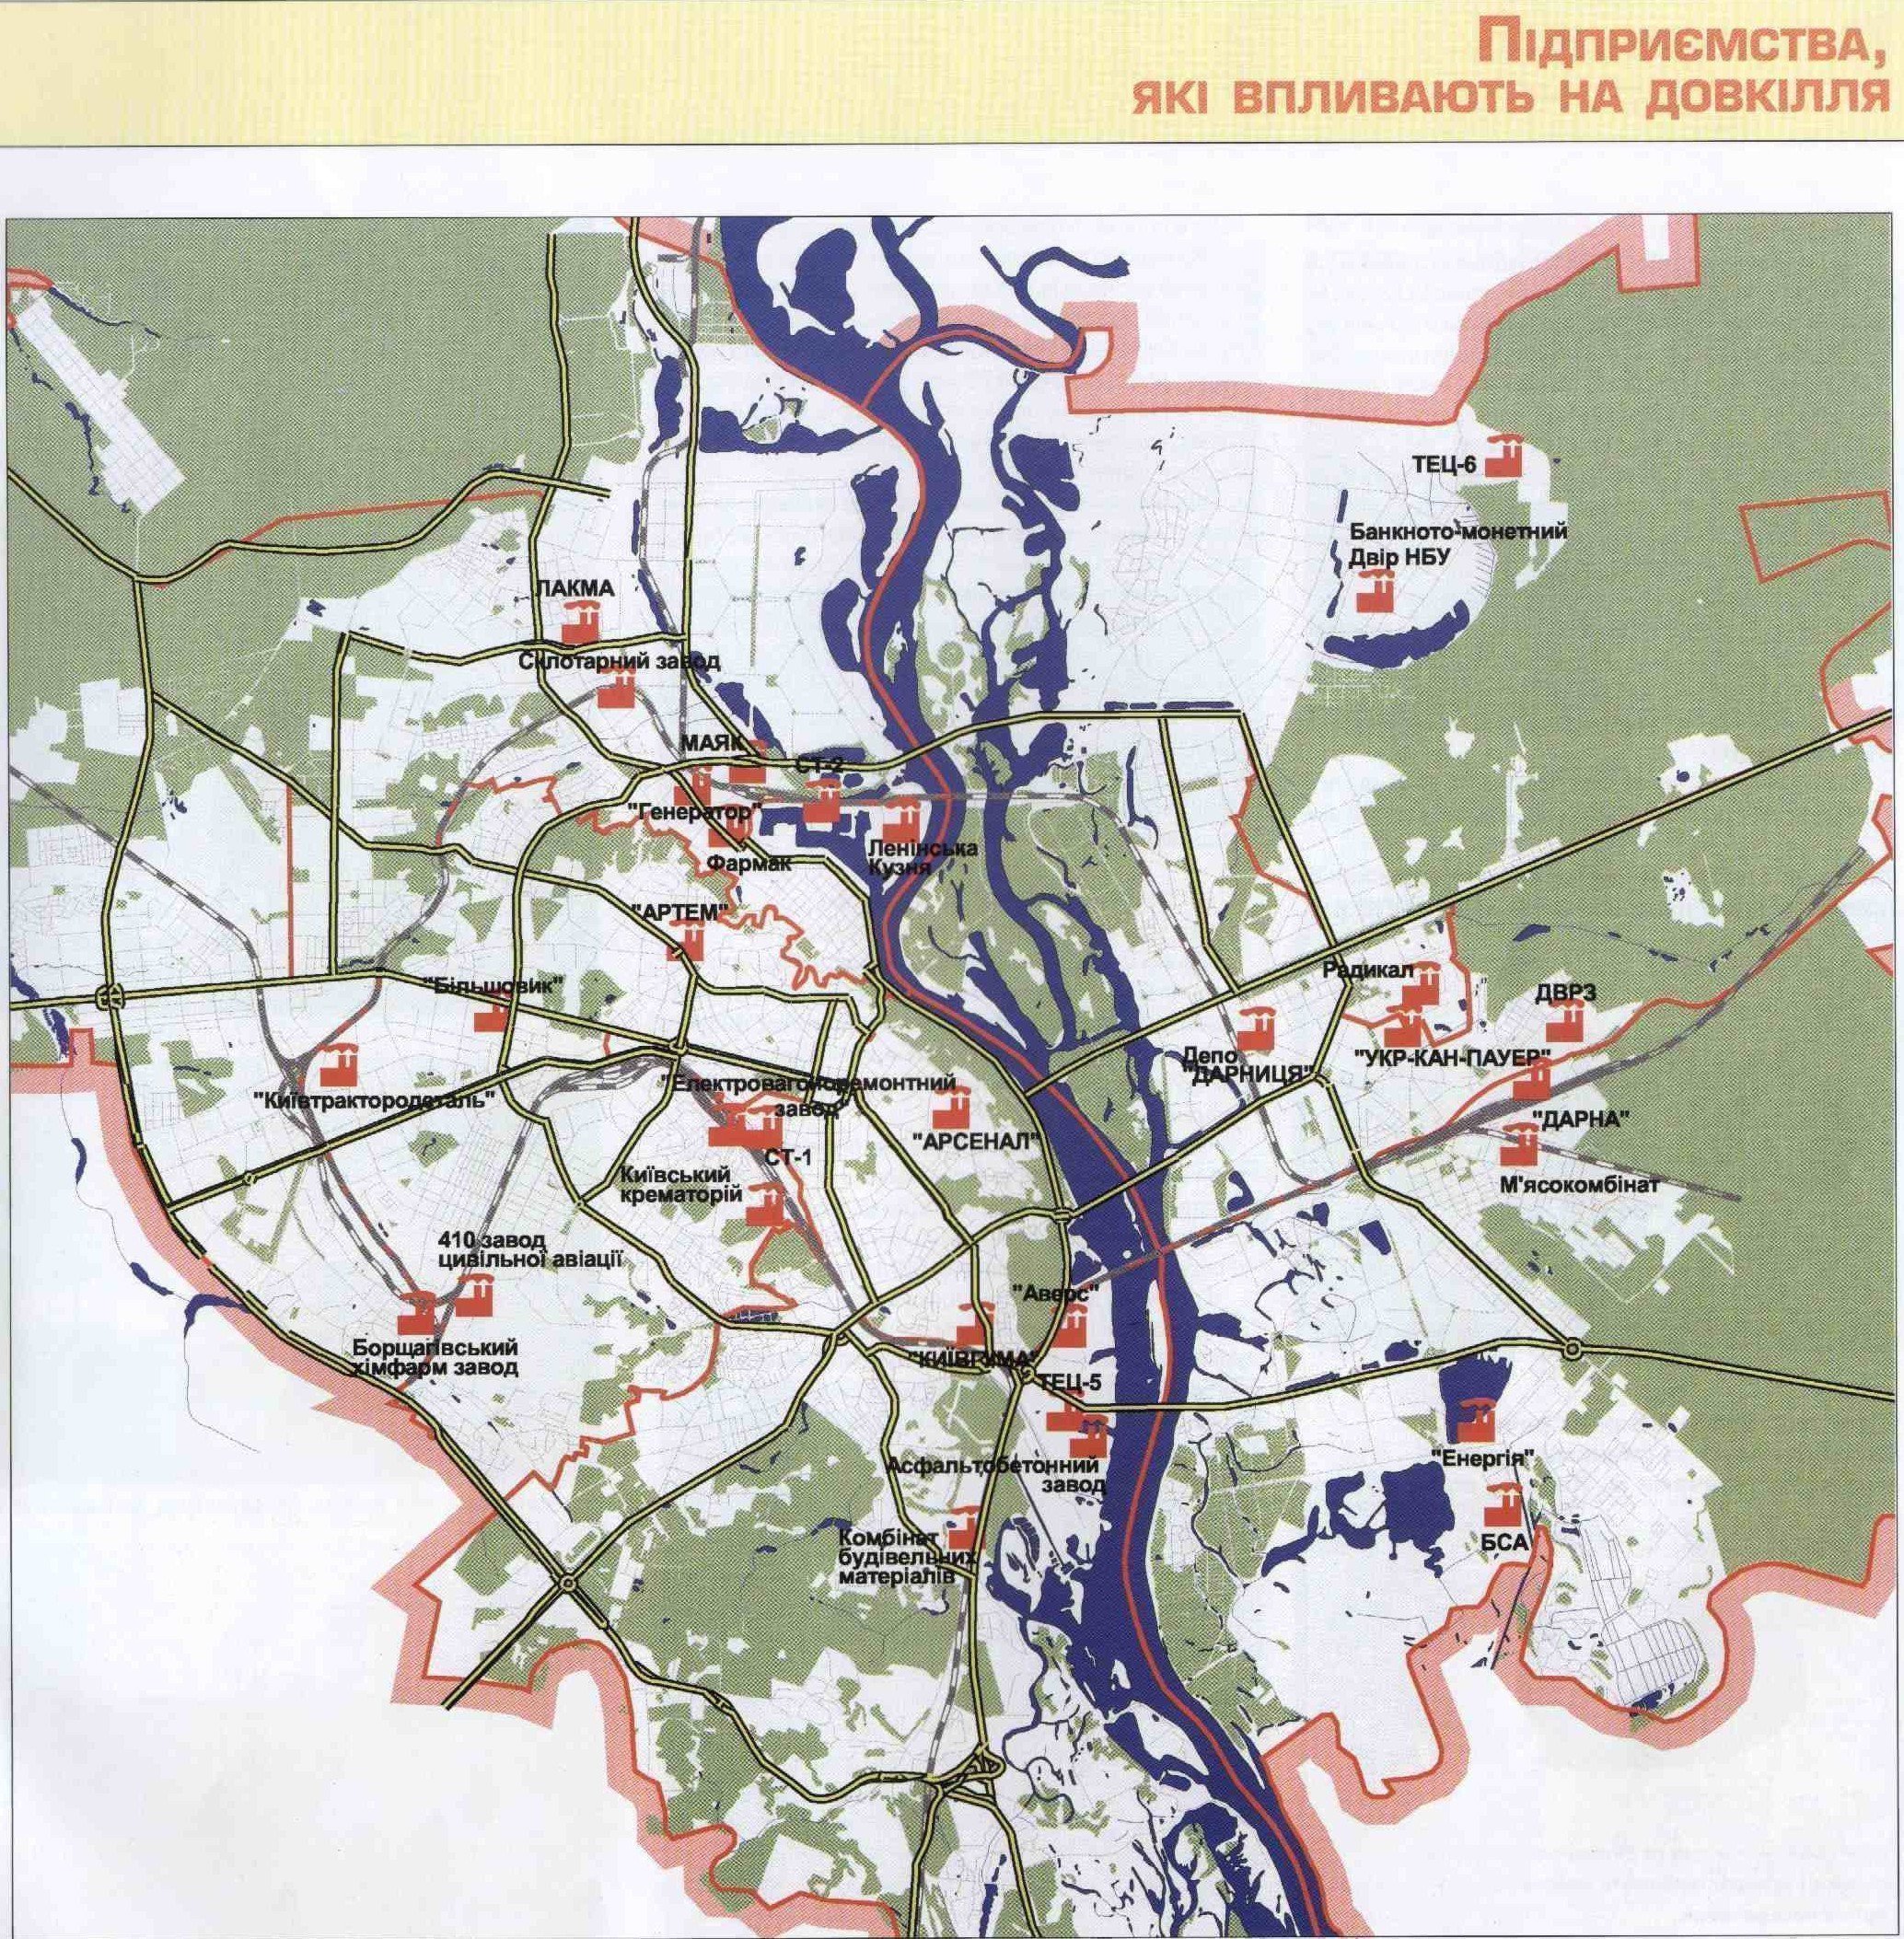 Картинка: Карта підприємств, які впливають на забруднення навколишнього середовища в Києві